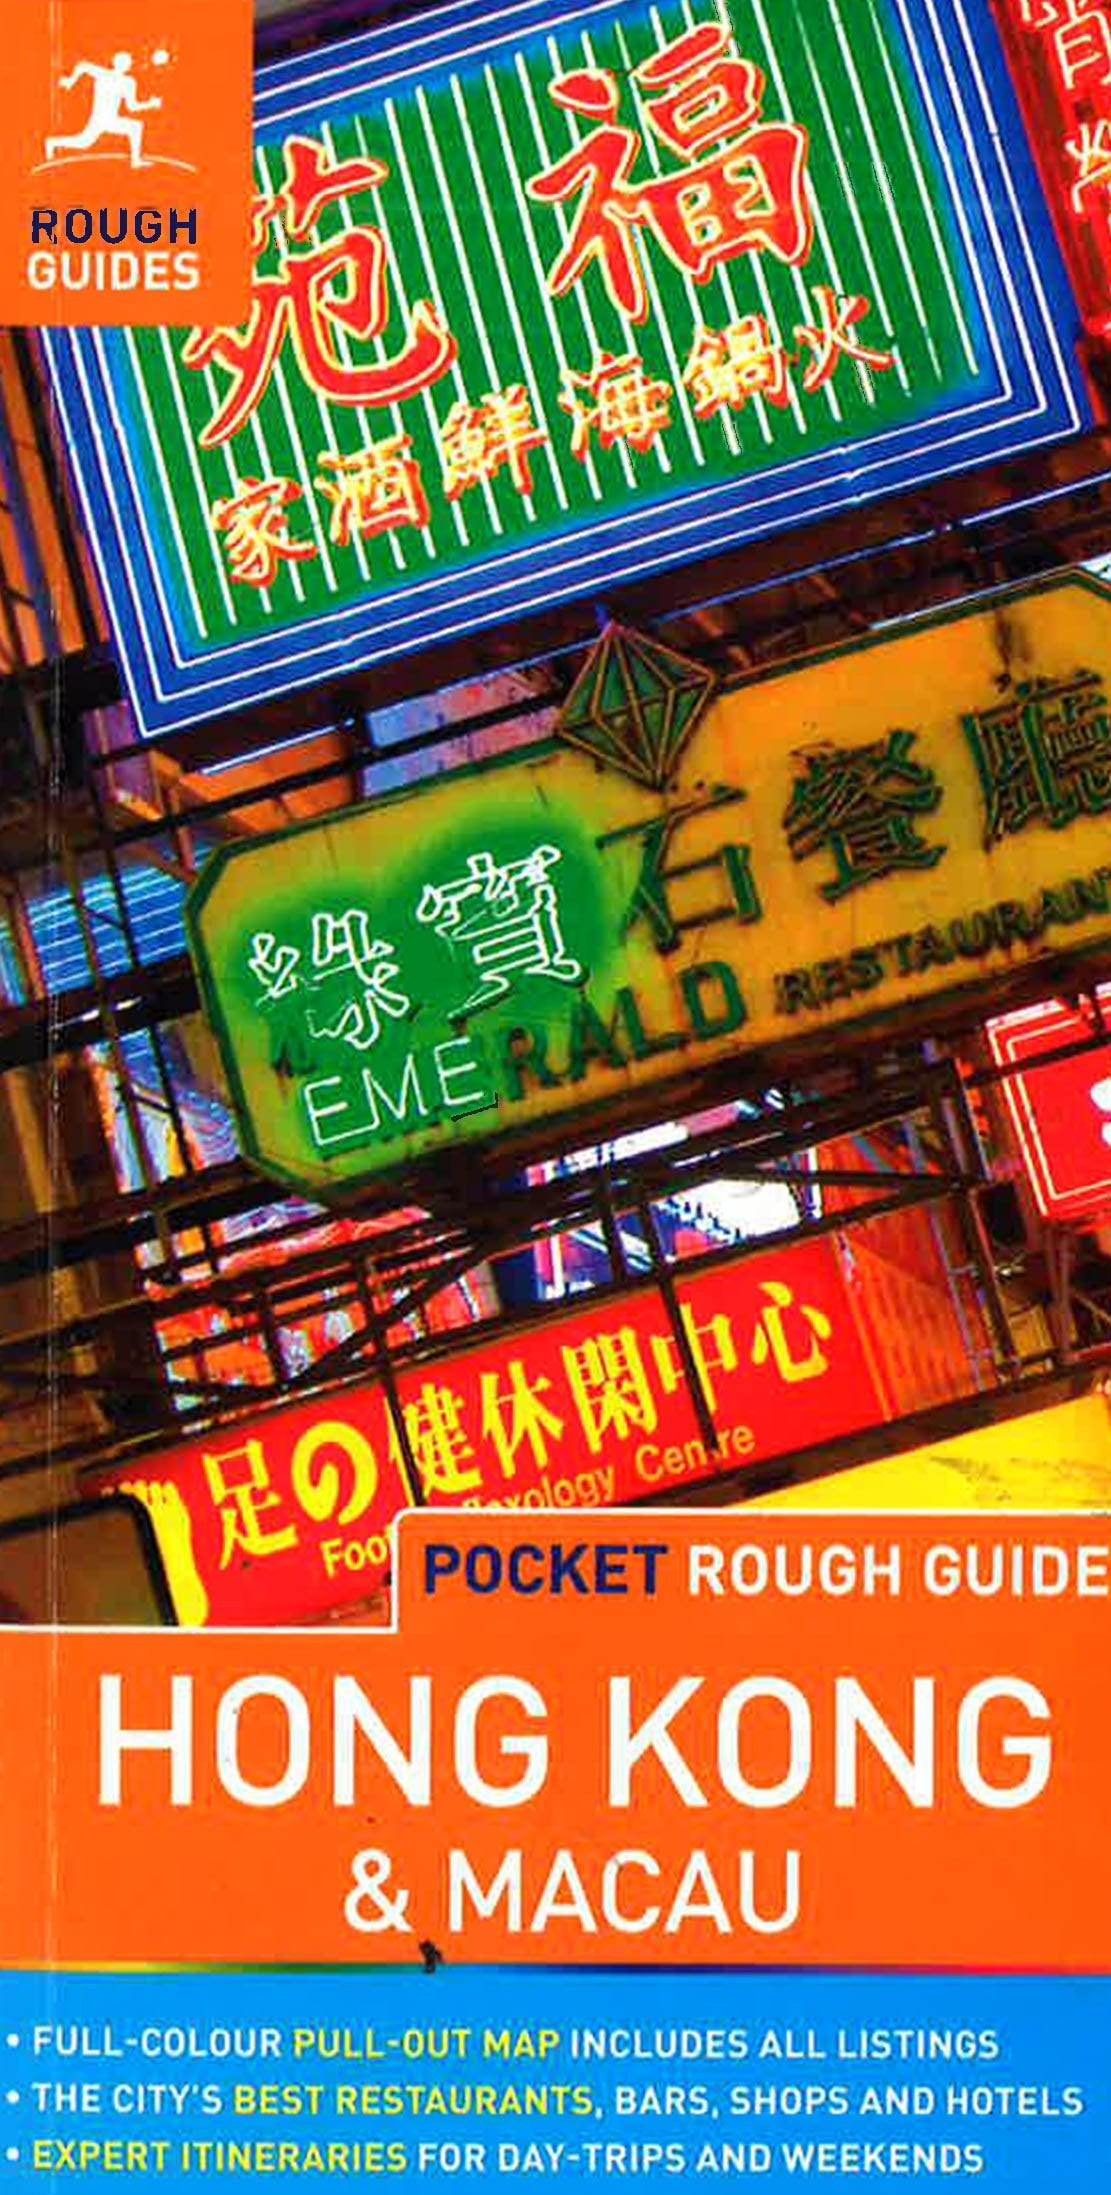 Hong Kong, Hong Kong Travel Guide- Top Hotels, Restaurants